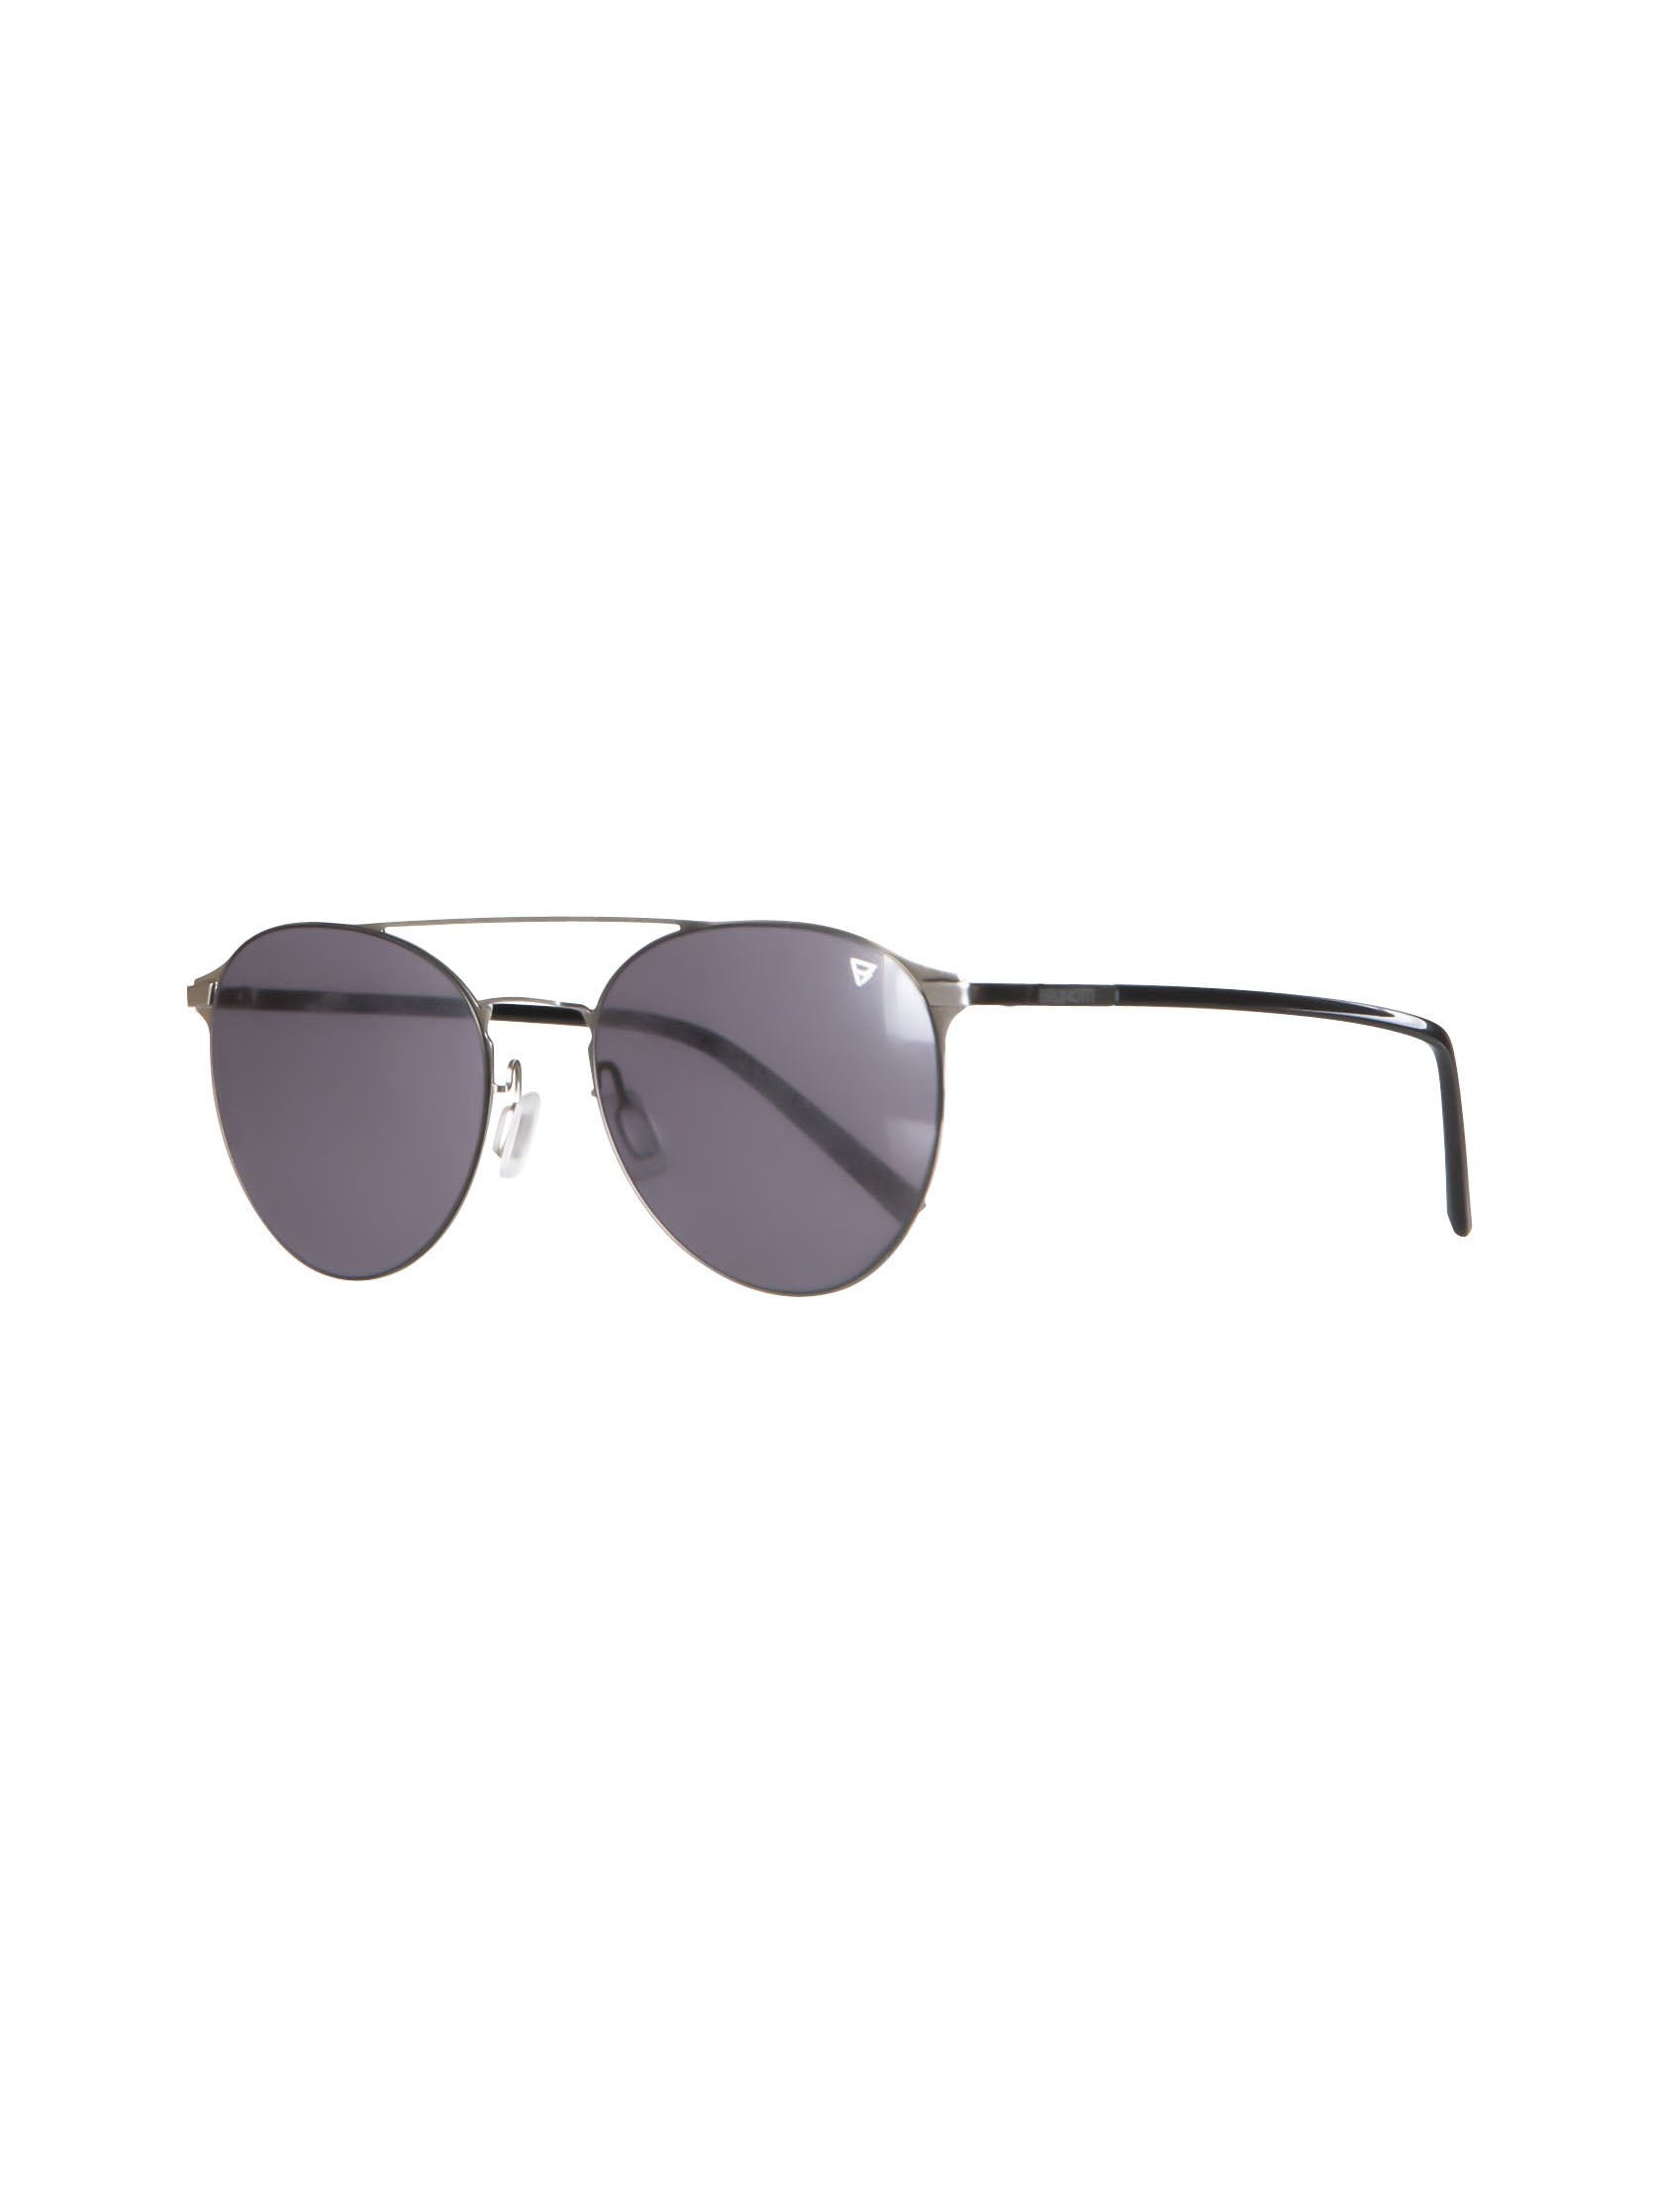 Garda 2 Unisex Sunglasses | Black